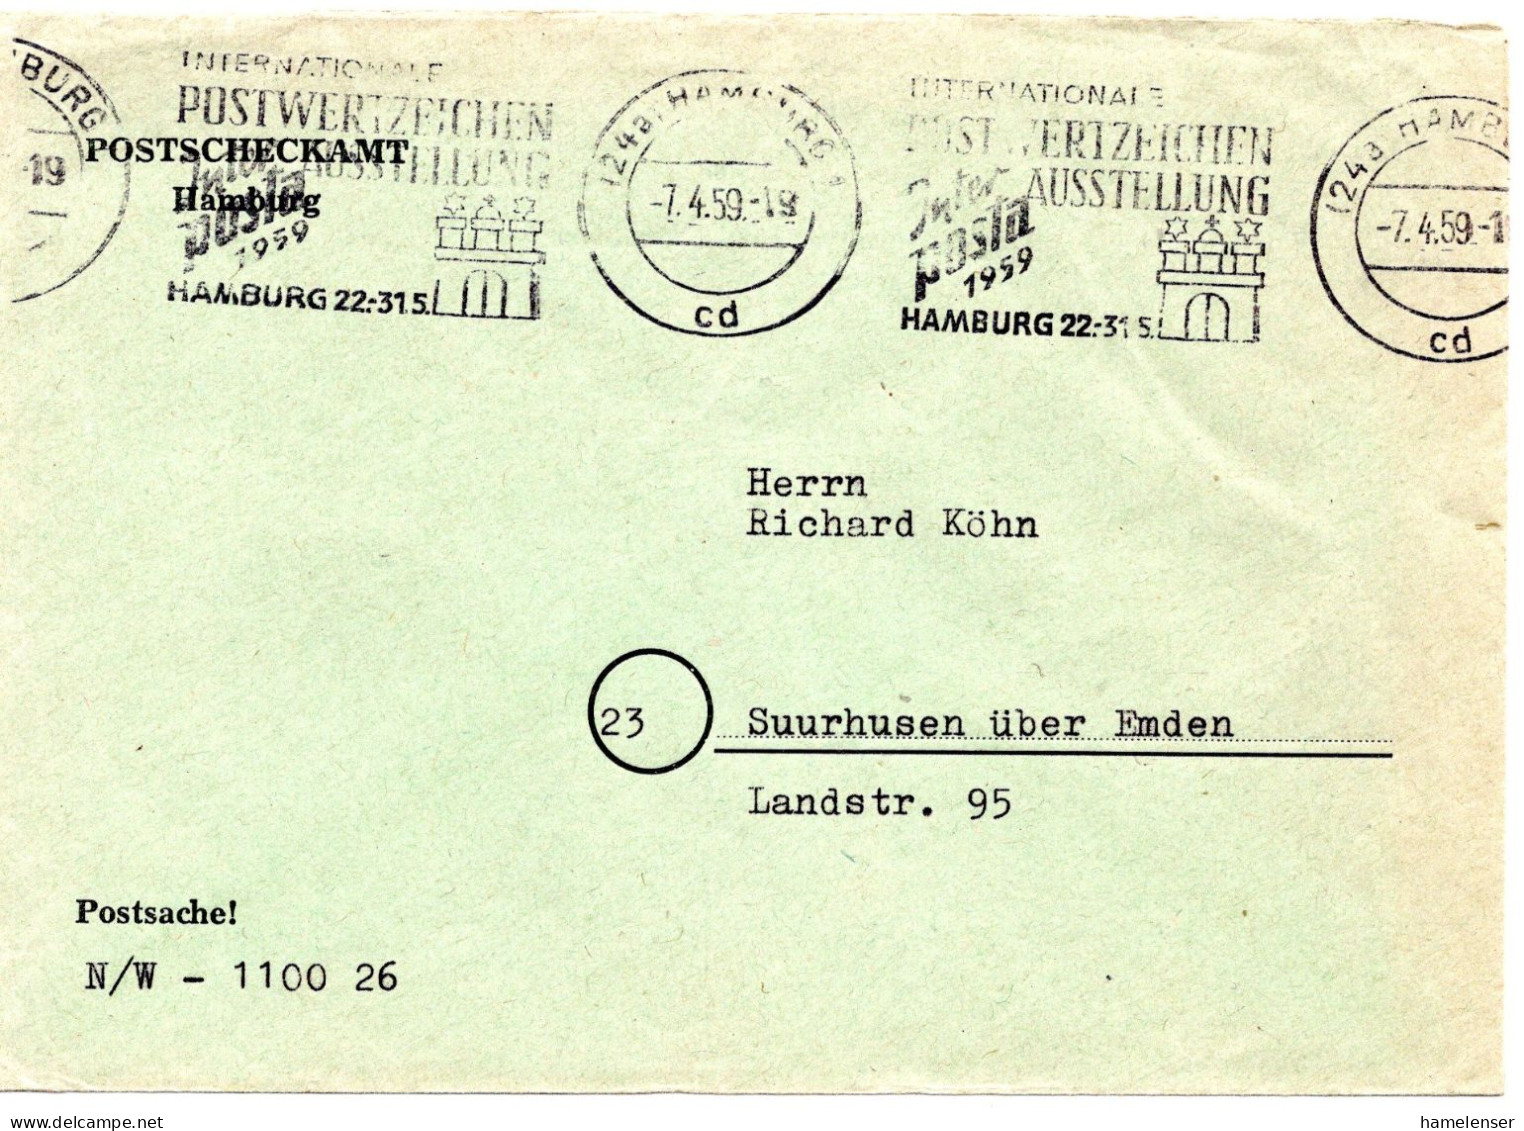 74930 - Bund - 1959 - PostscheckBf HAMBURG - ... INTERPOSTA 1959 ... -> Suurhusen - Covers & Documents